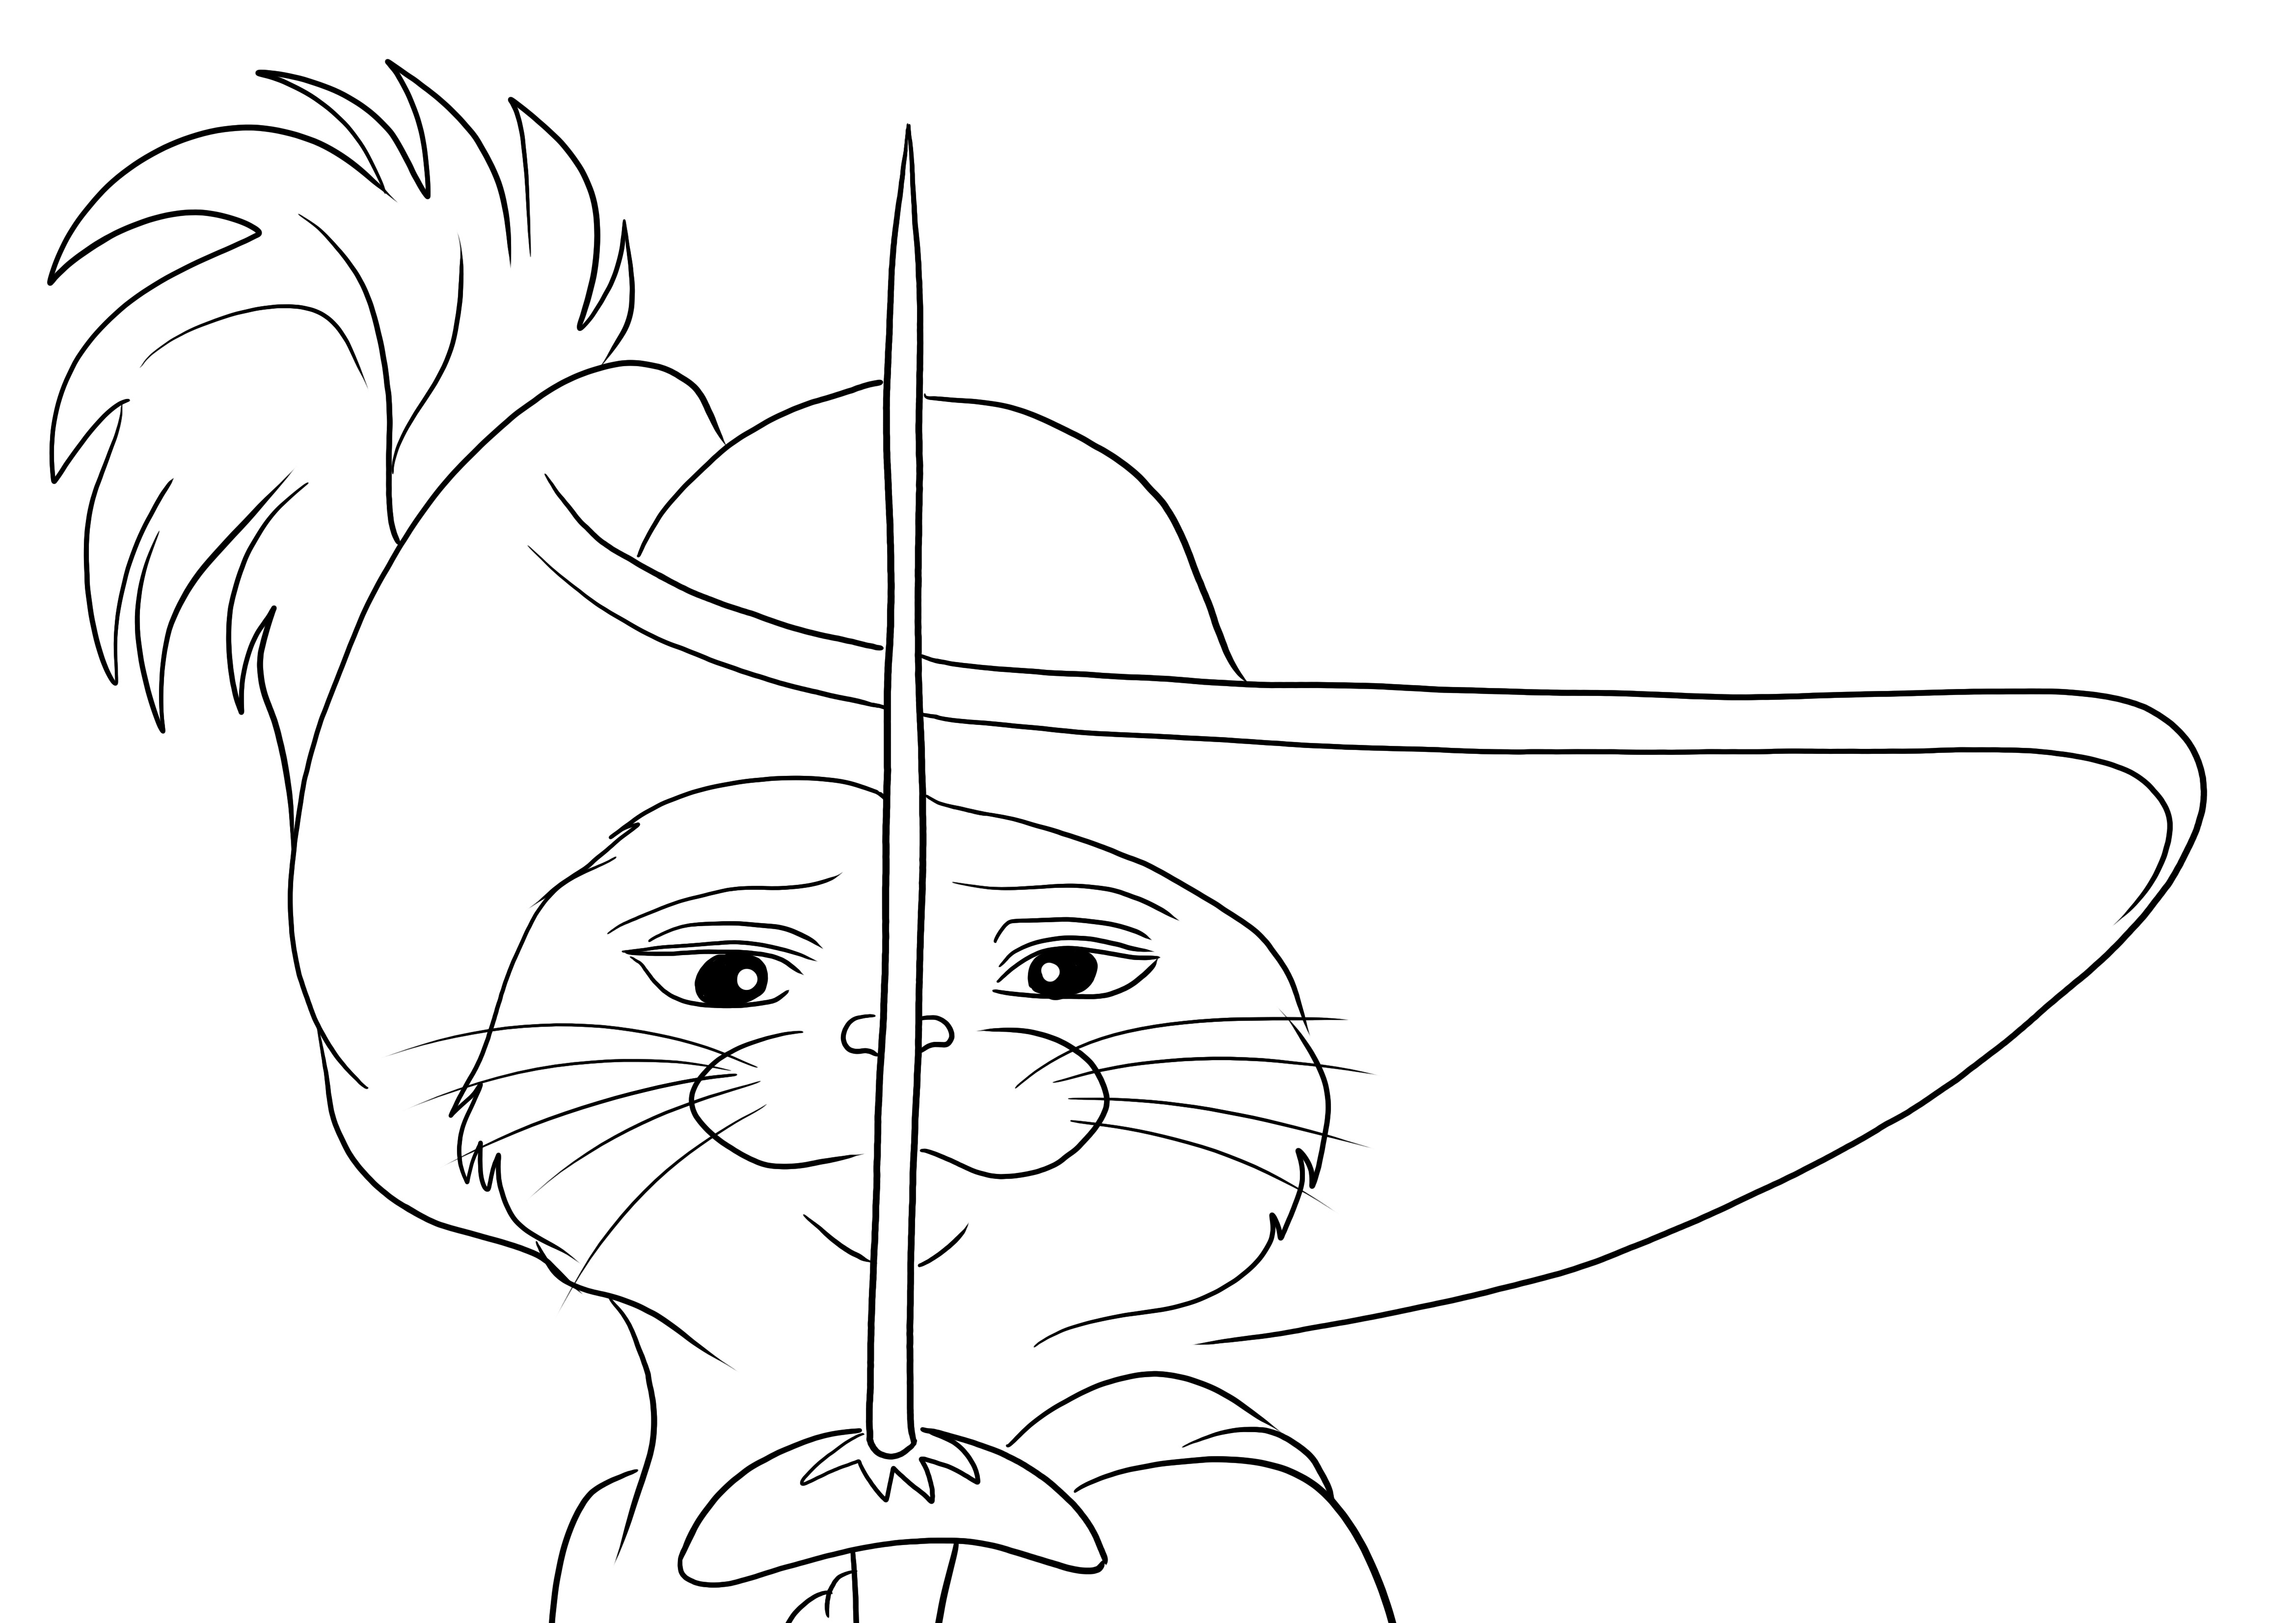 Eğlenceli çizim için Çizmeli Kedi ve kılıcının ücretsiz baskısı